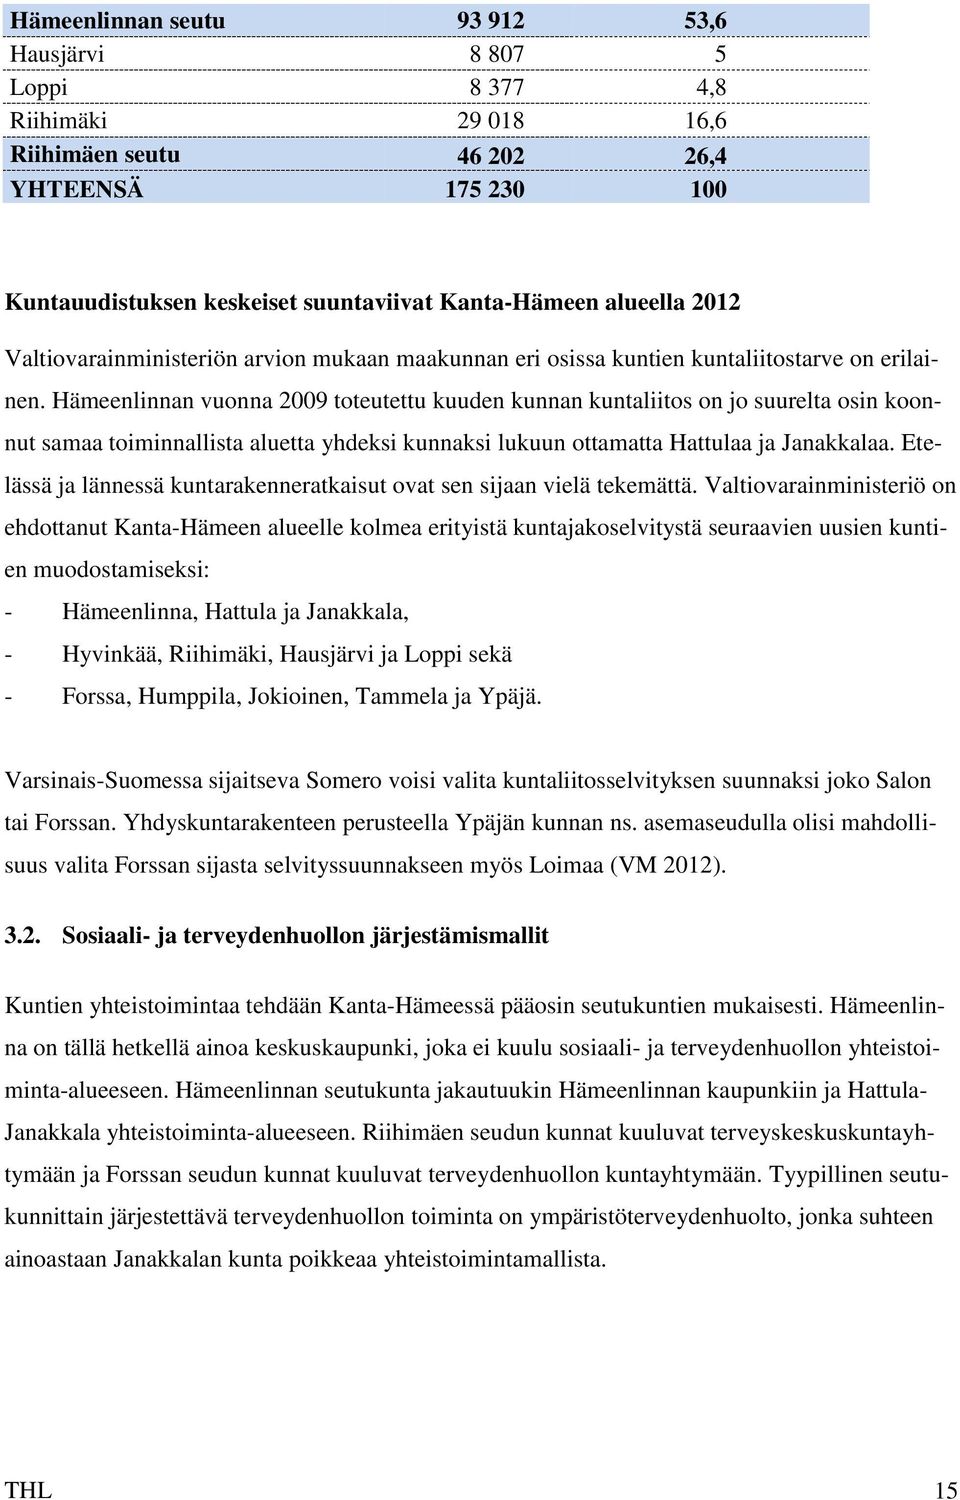 Hämeenlinnan vuonna 2009 toteutettu kuuden kunnan kuntaliitos on jo suurelta osin koonnut samaa toiminnallista aluetta yhdeksi kunnaksi lukuun ottamatta Hattulaa ja Janakkalaa.